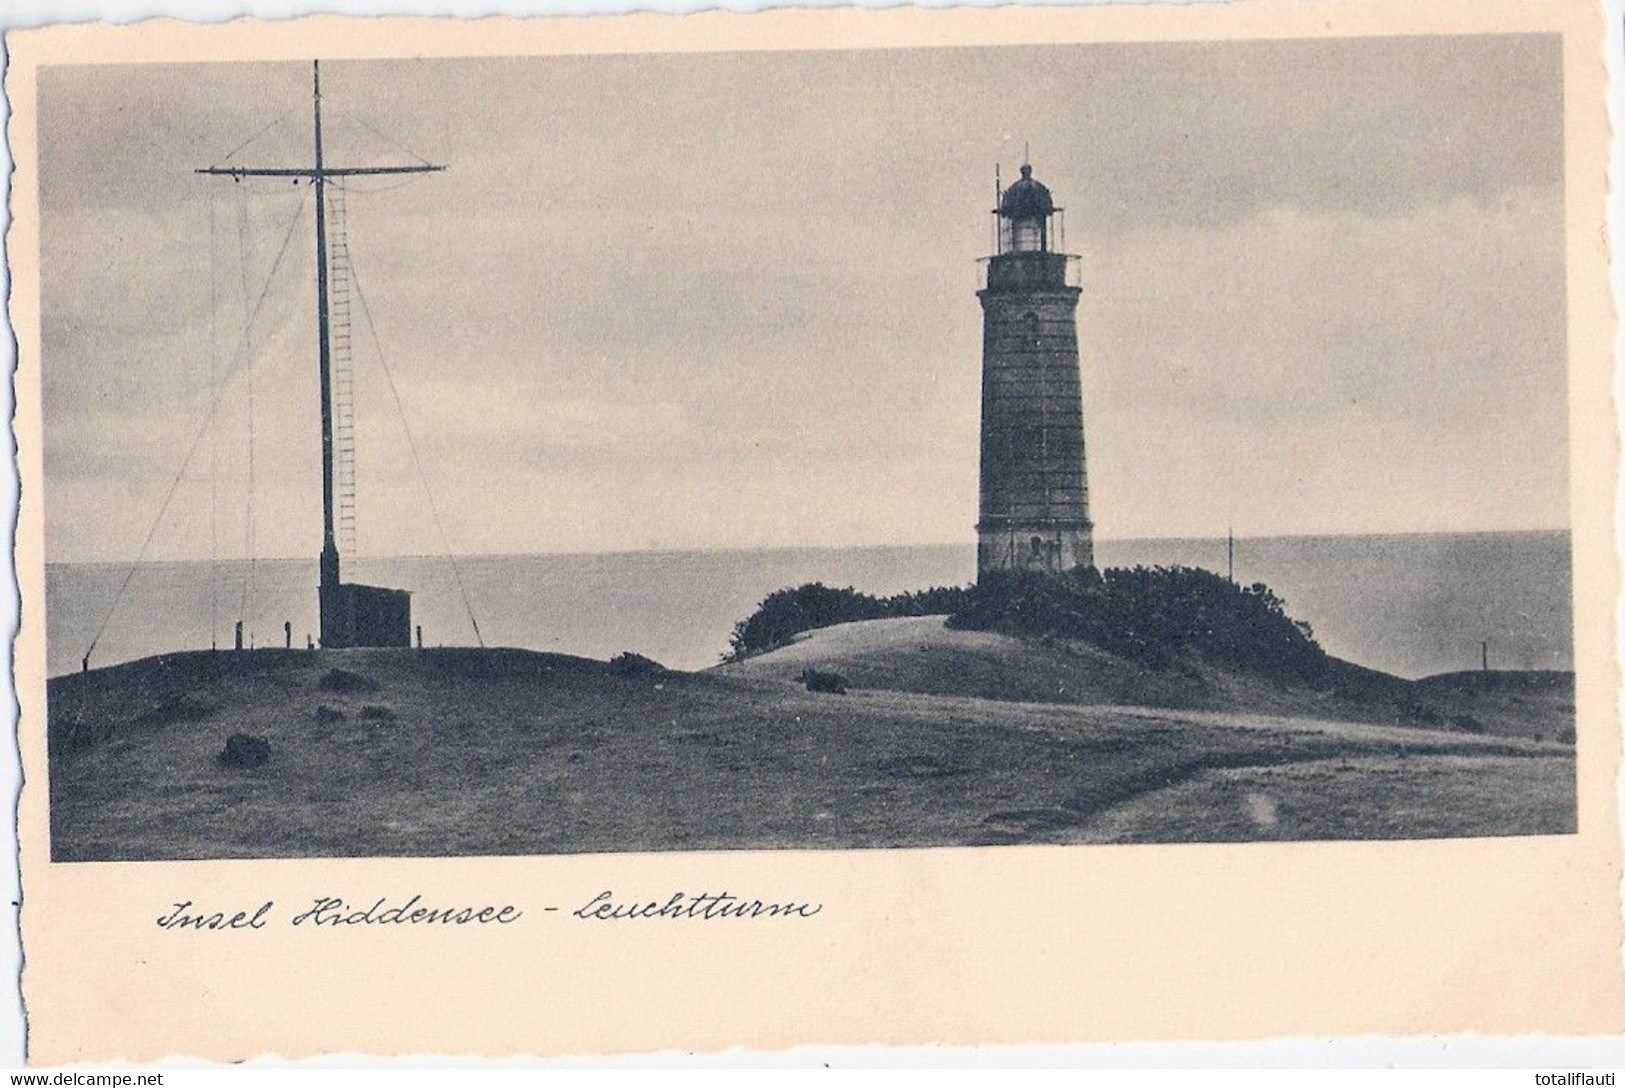 Insel HIDDENSEE Vorpommern Leuchtturm Mit Signalanlage 10.8.1933 Gelaufen Fast TOP-Erhaltung - Hiddensee